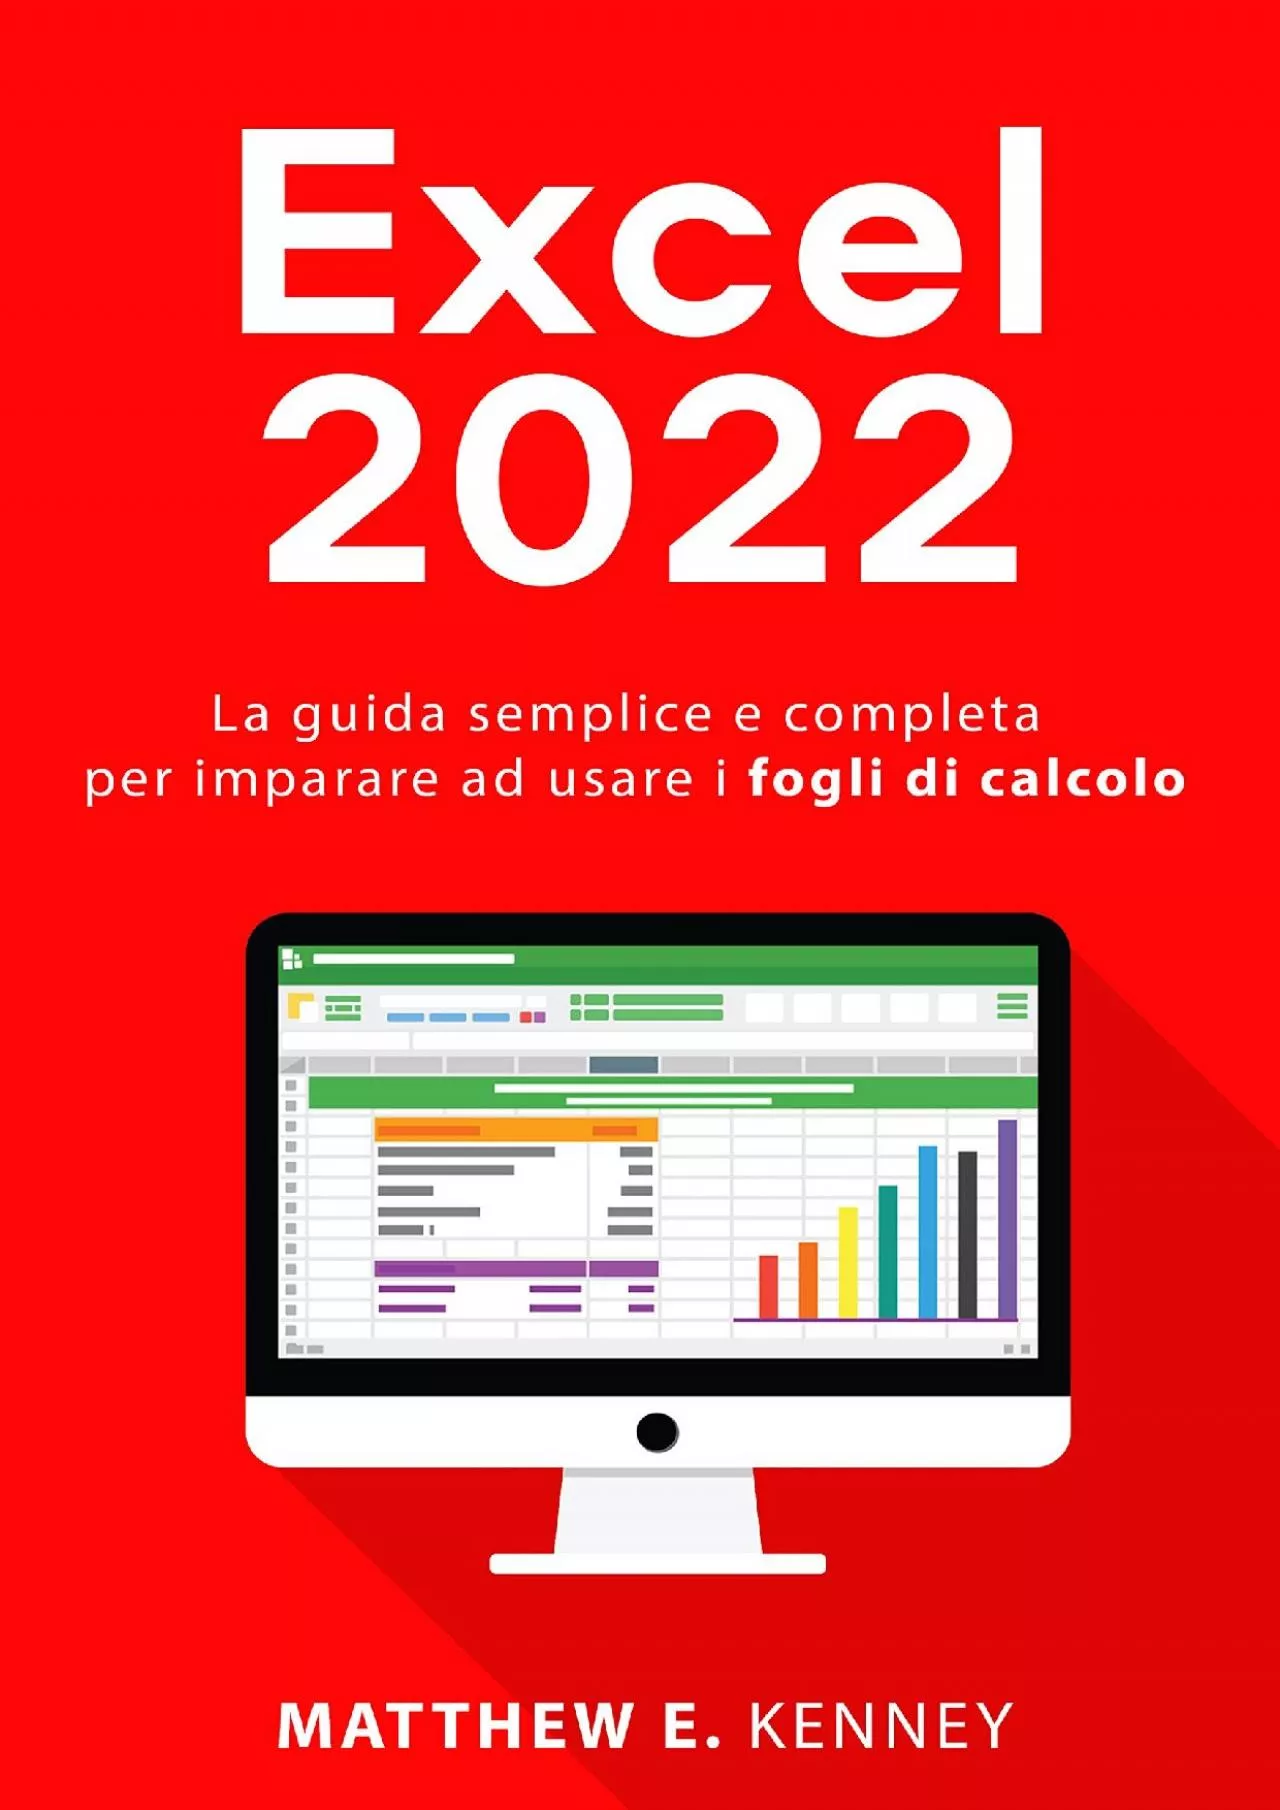 (BOOS)-Excel: 2022 La guida semplice e completa per imparare ad usare i fogli di calcolo